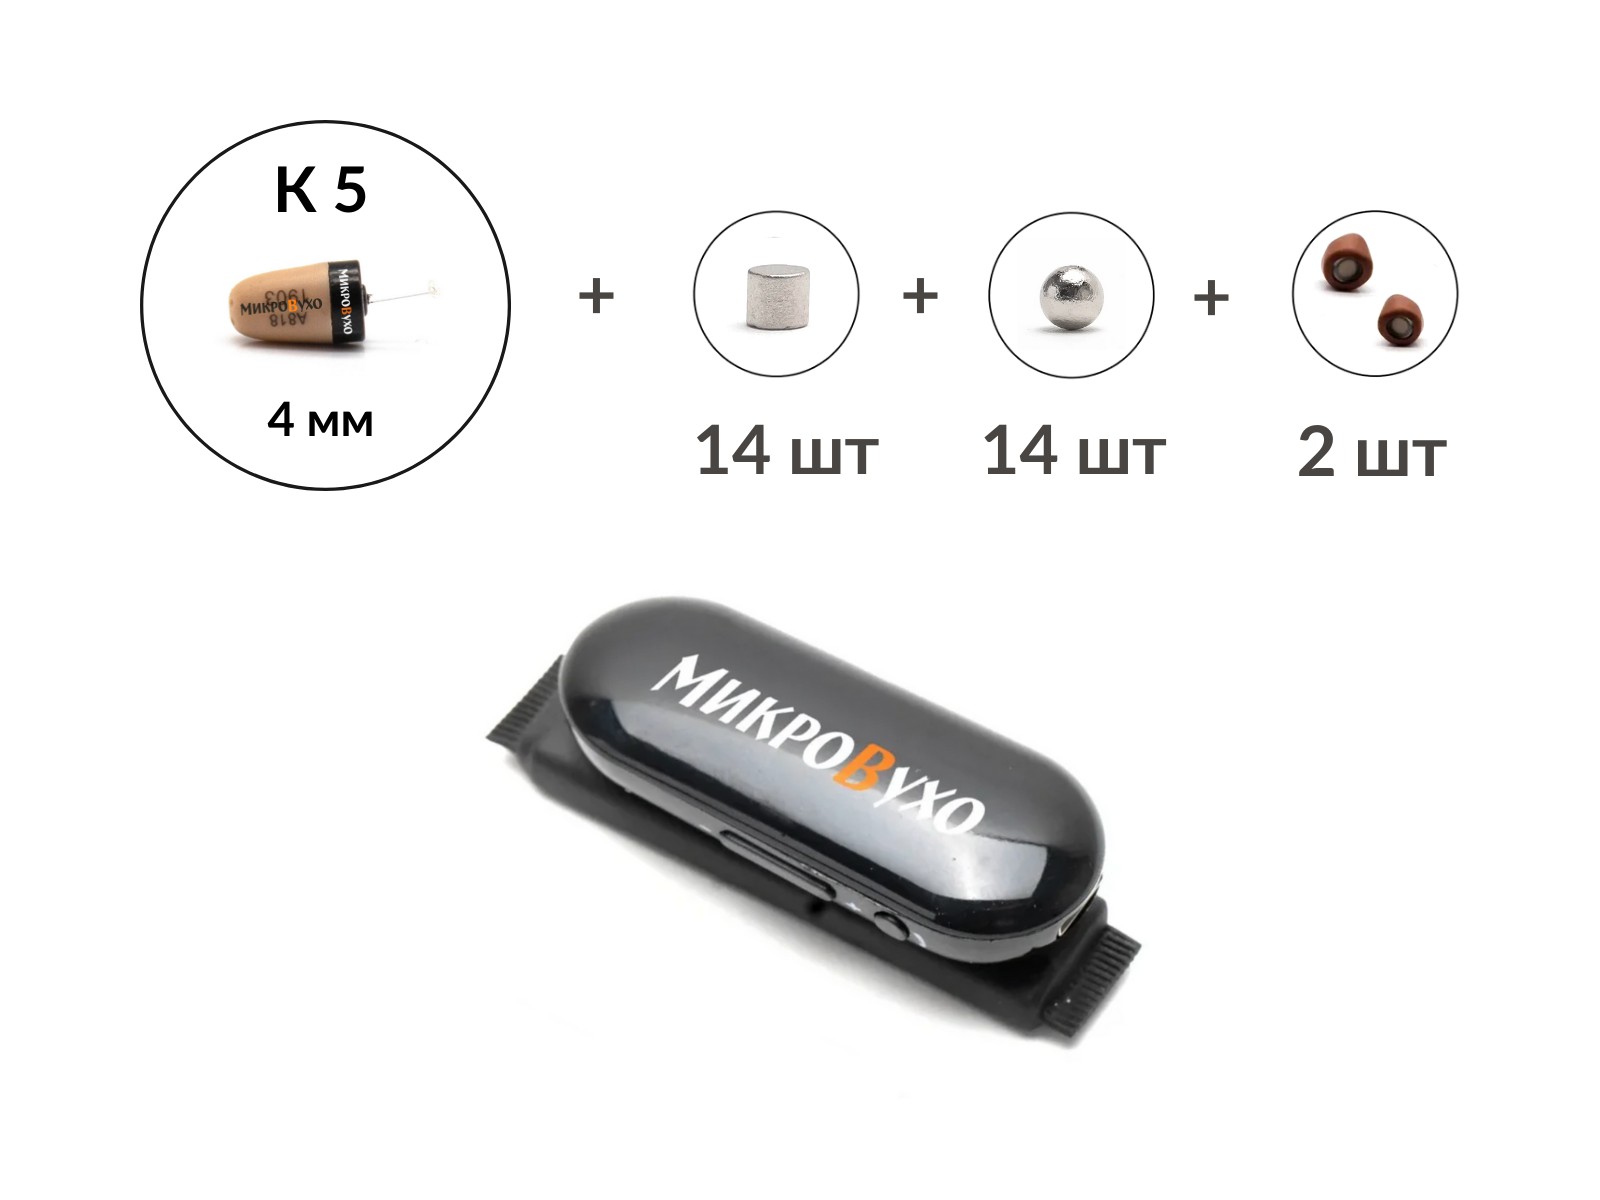 Универсальная гарнитура Bluetooth Box Pro Plus c капсулой К5 4 мм и магнитами 2 мм 1